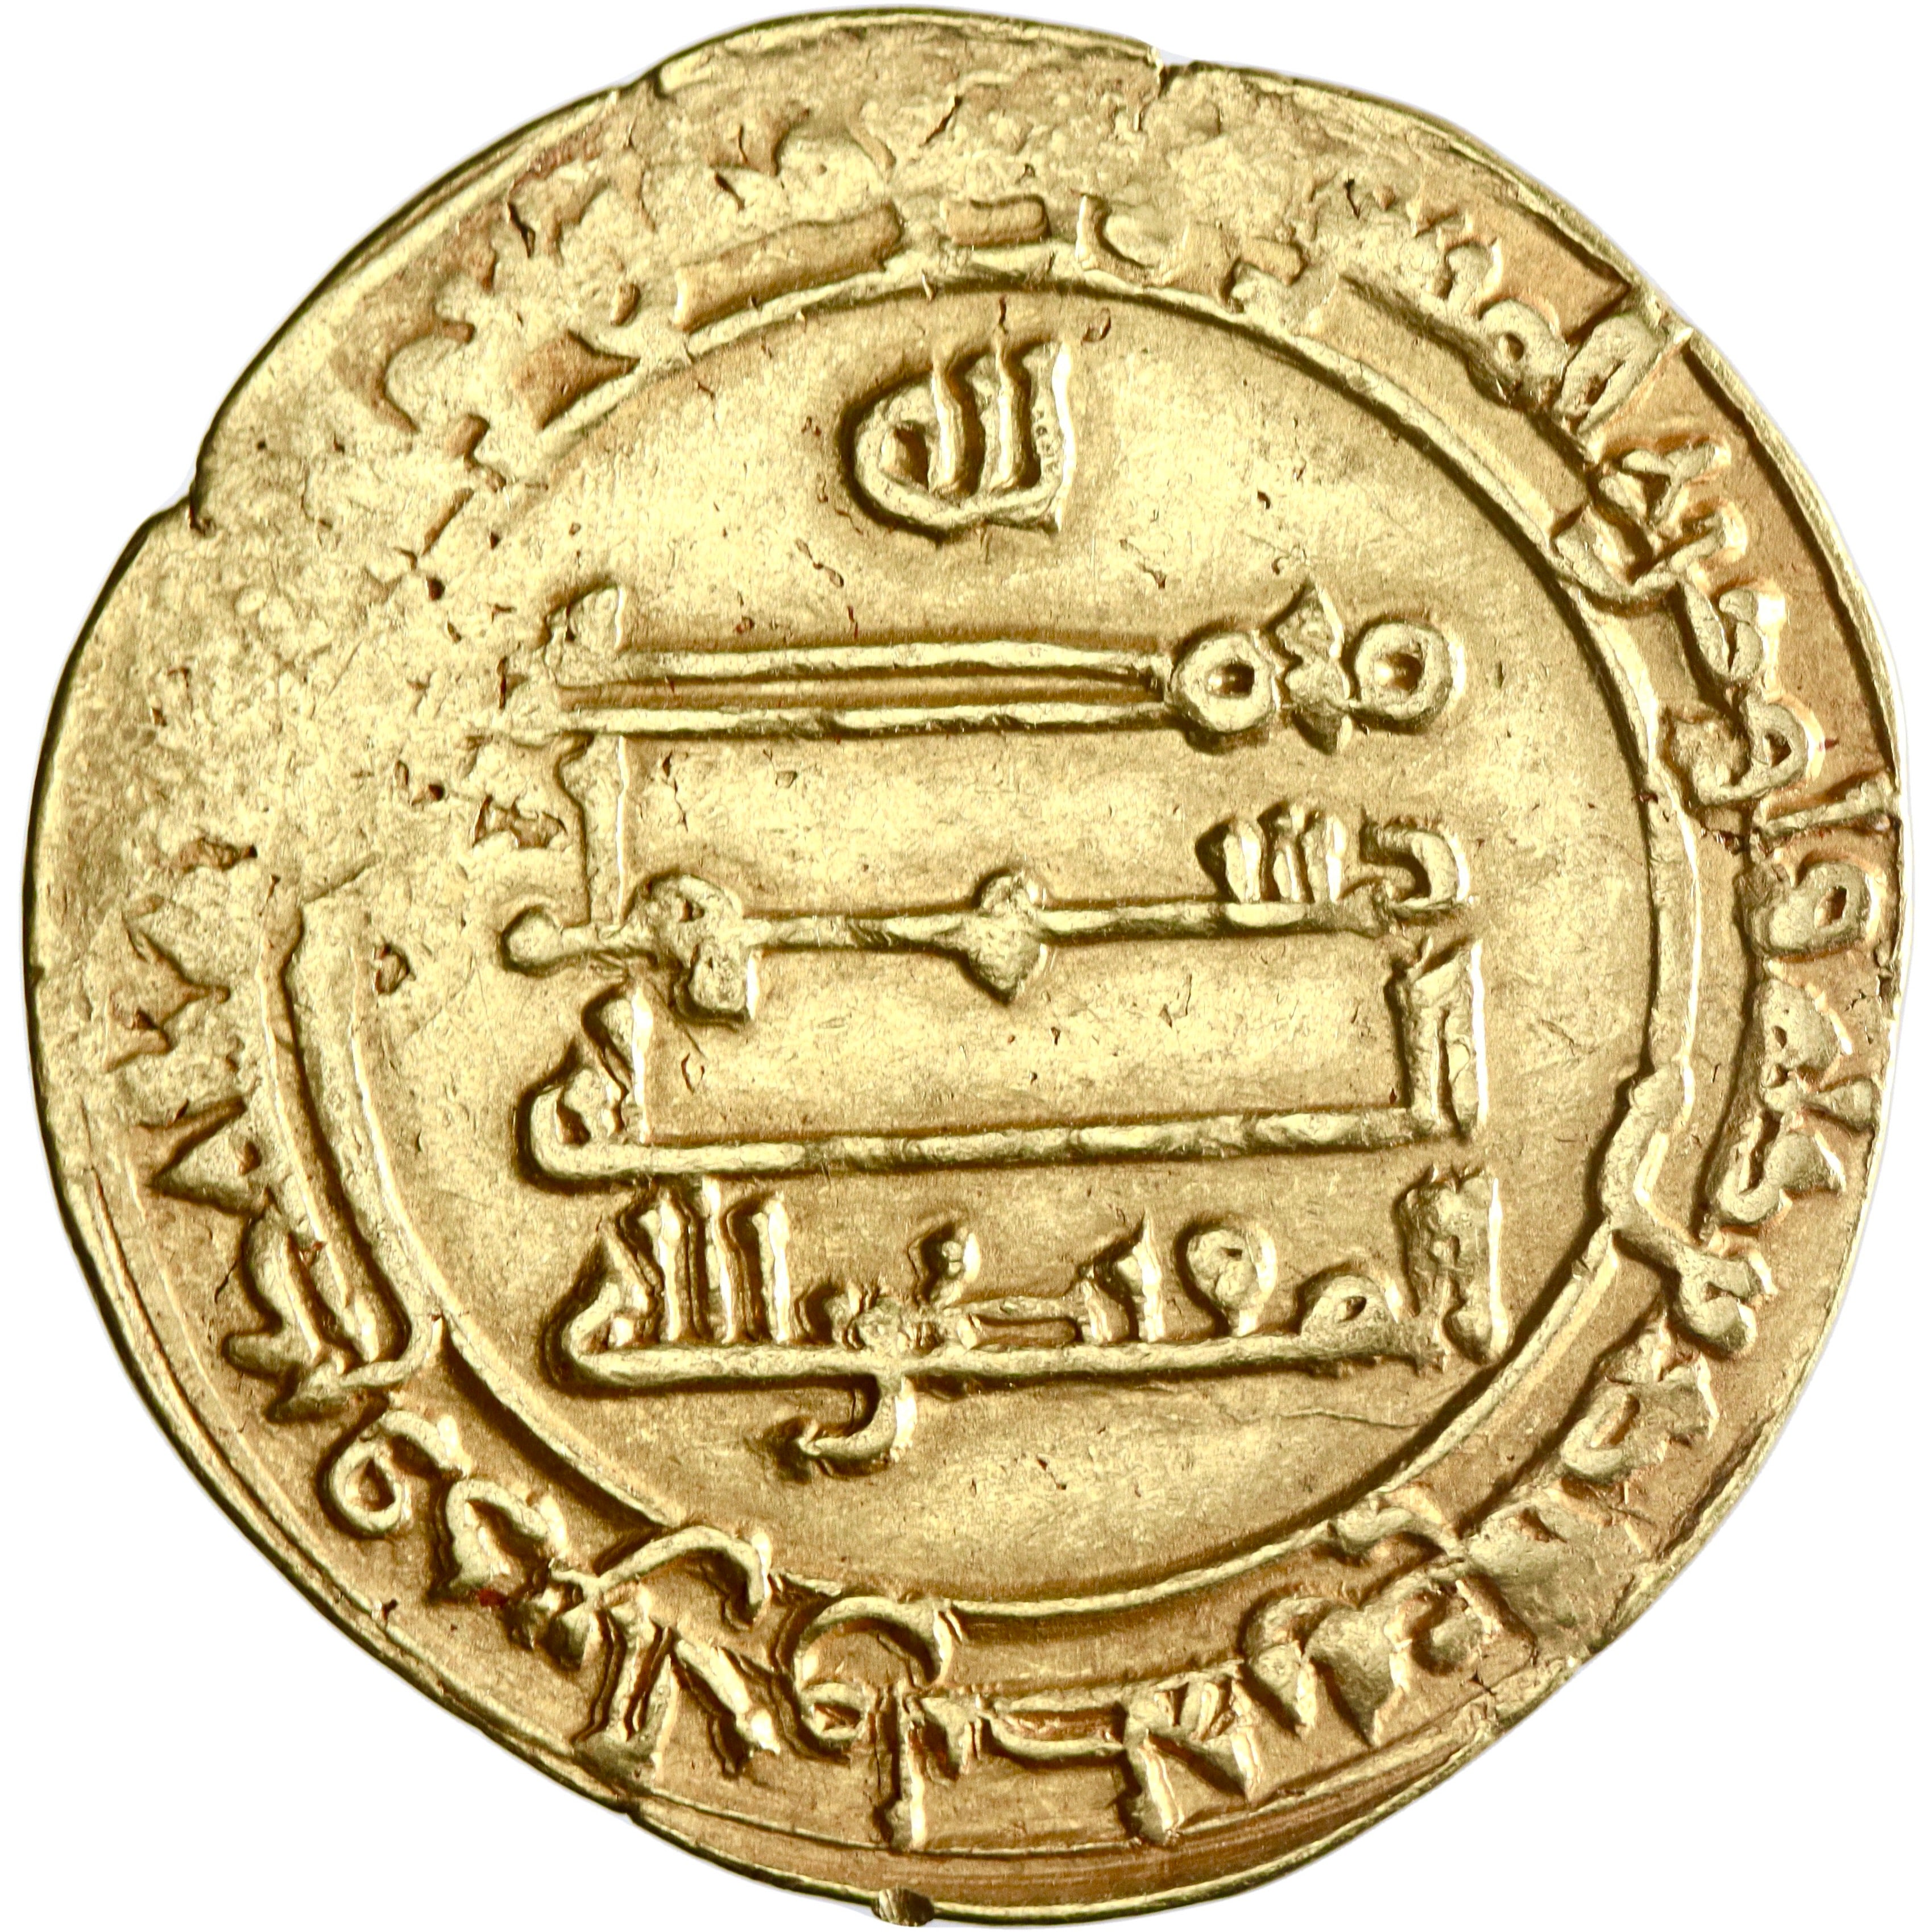 Abbasid, al-Muqtadir, gold dinar, Suq al-Ahwaz mint, AH 309, citing Abu al-'Abbas